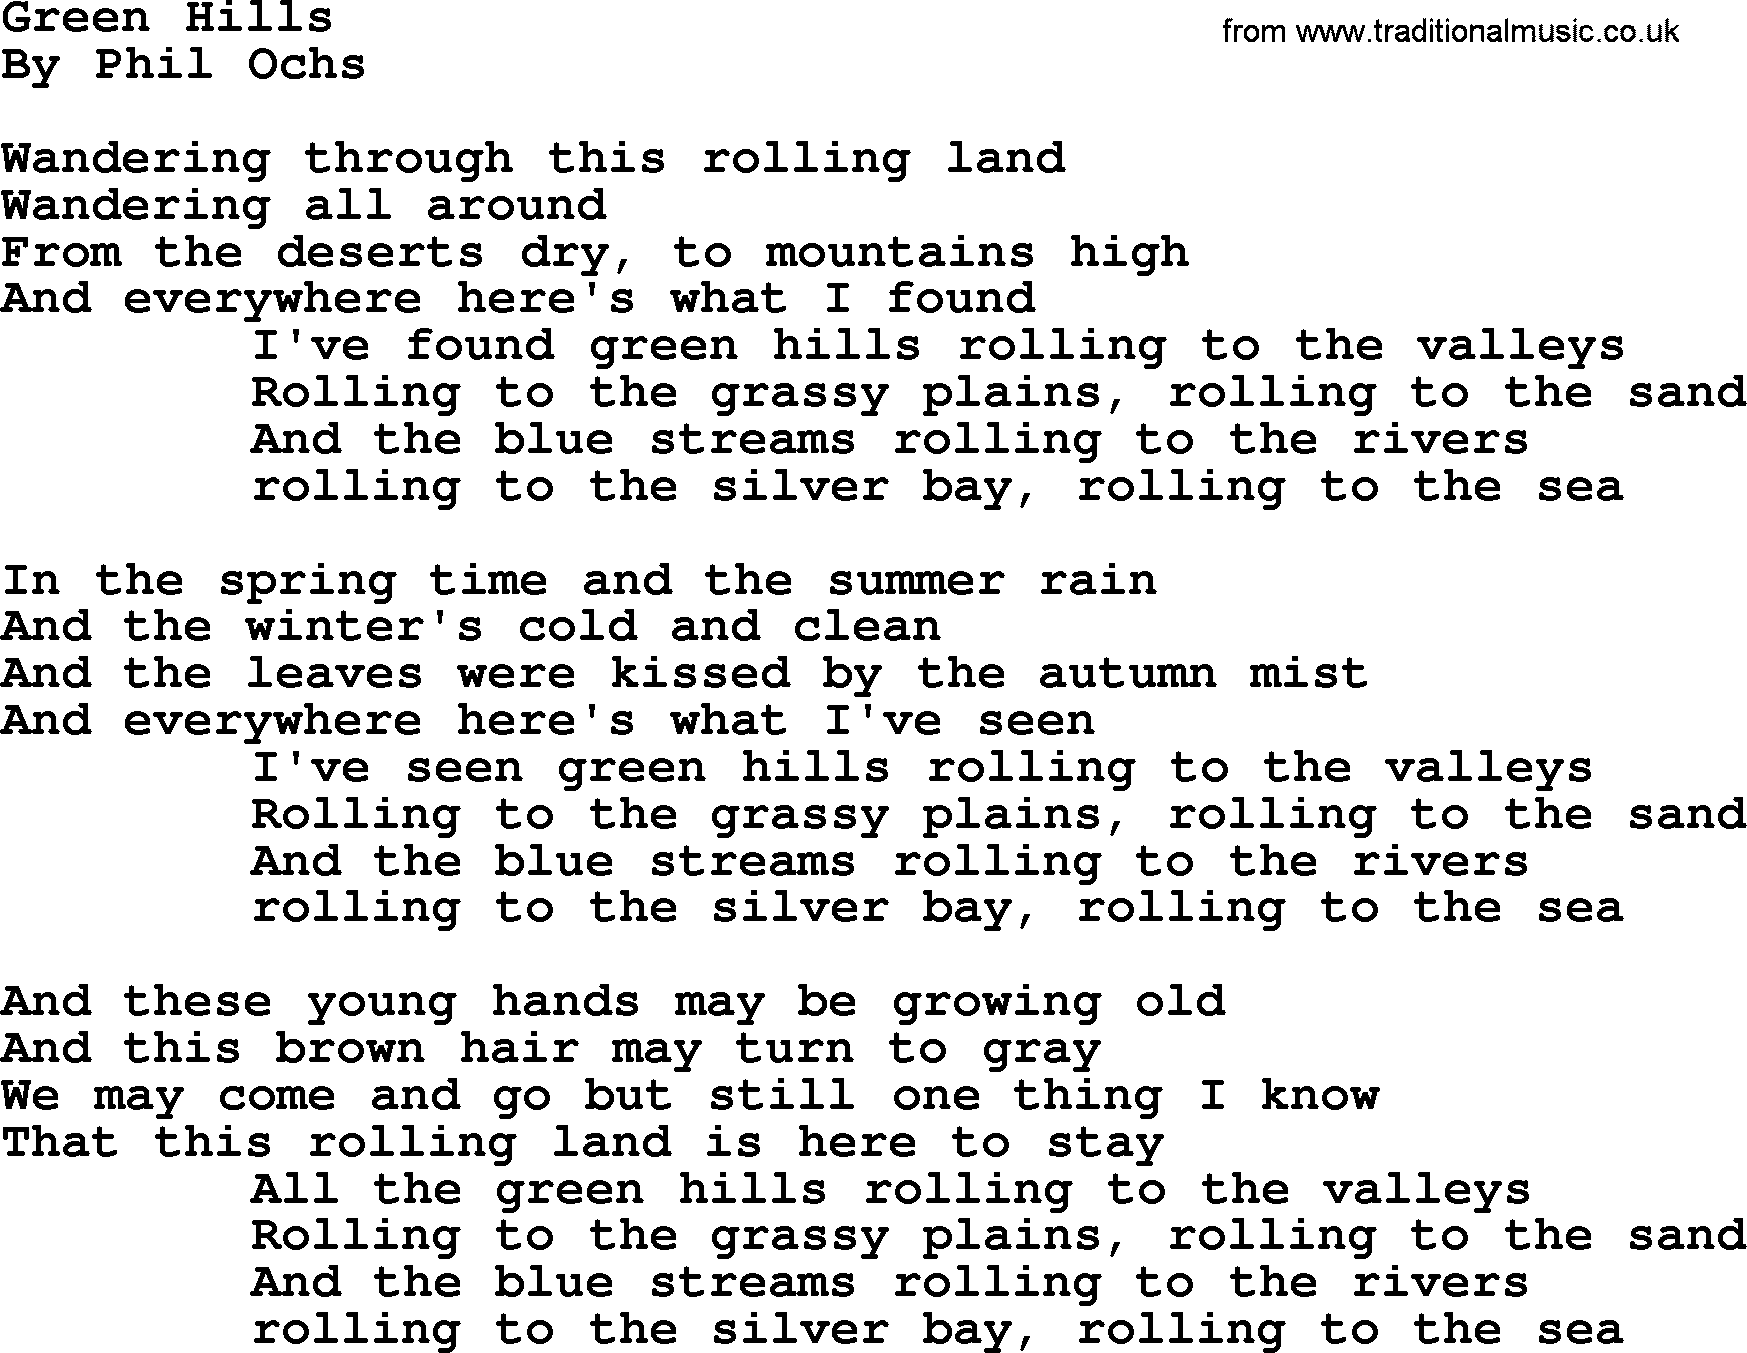 Phil Ochs song Green Hills, lyrics